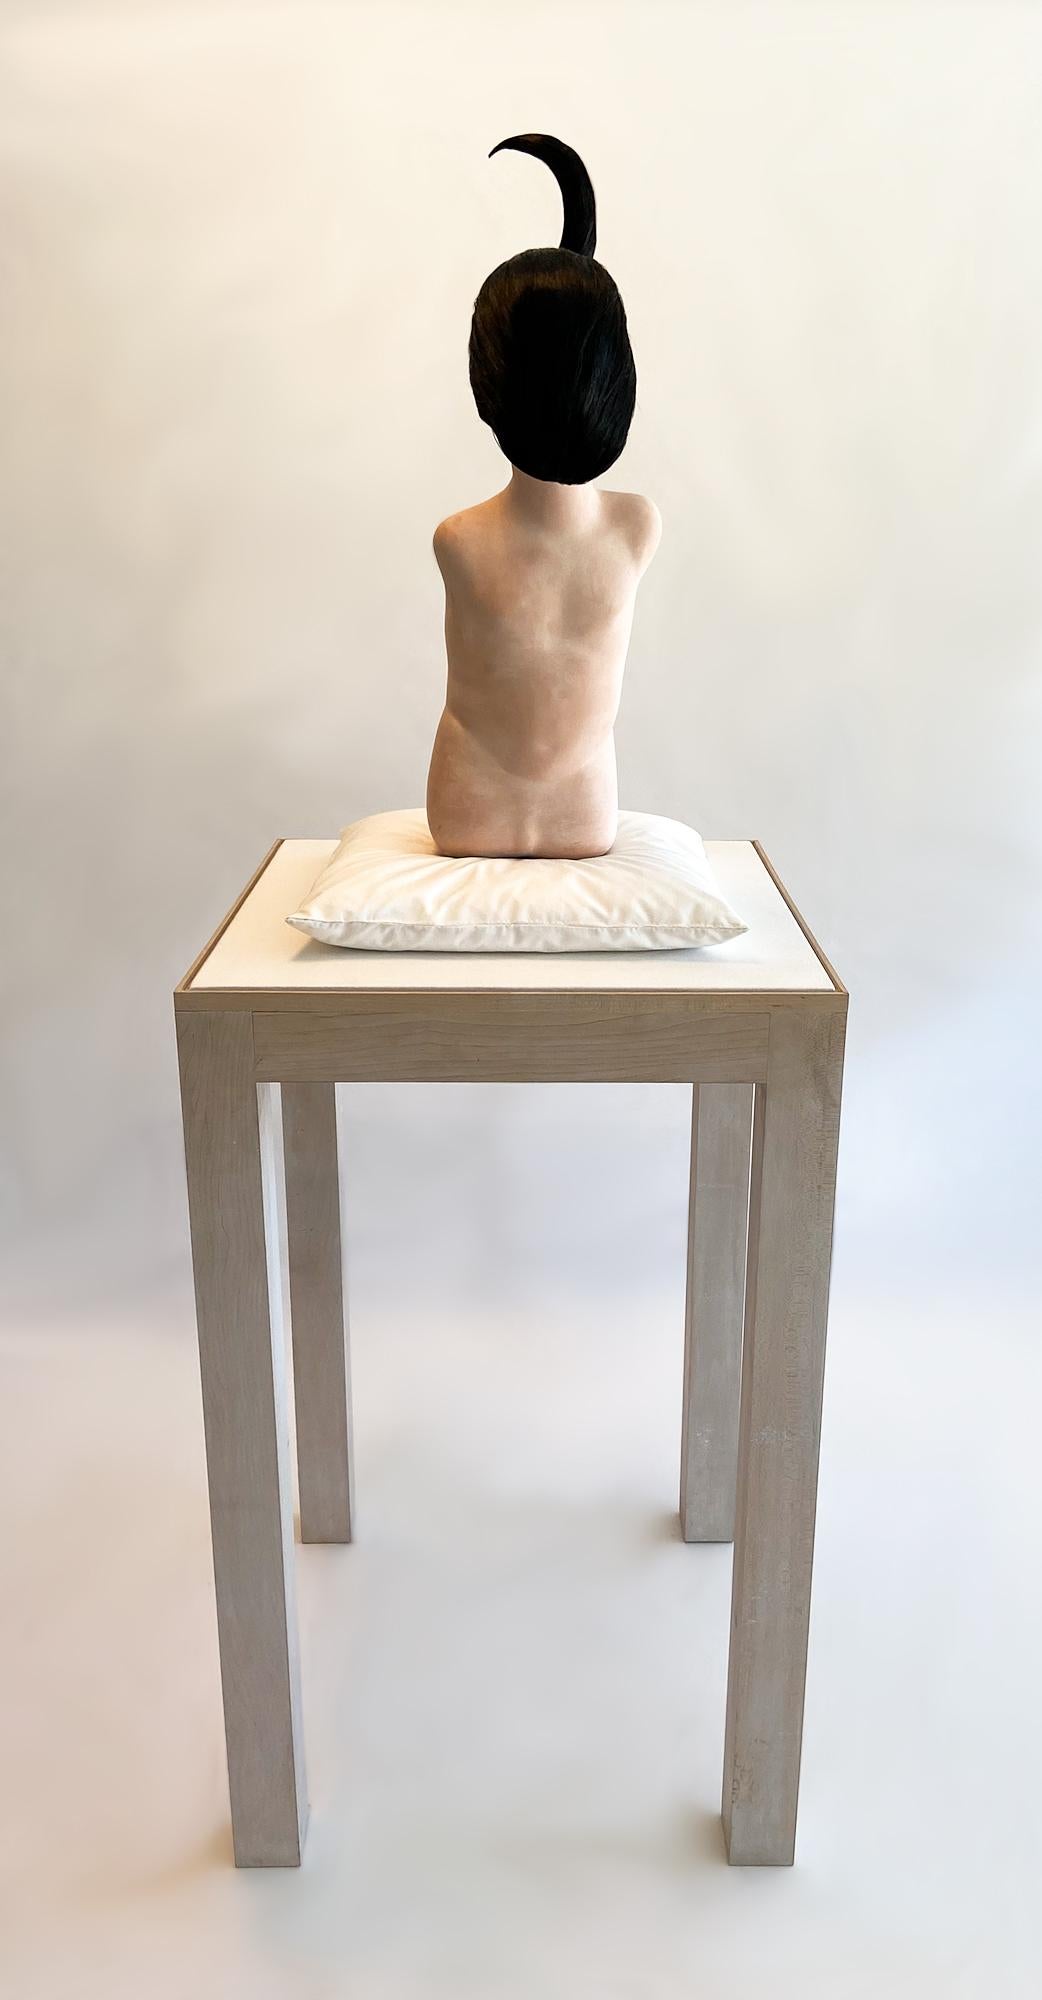 Surrealistische Skulptur „Mädchen 3“ von Edward Lipski, Postmoderne Skulptur, UK, 2002
Edward Lipski (Großbritannien, geb. 1966) ist ein Künstler und Bildhauer, der dafür bekannt ist, dass er unangenehme Bereiche der menschlichen Psyche durch